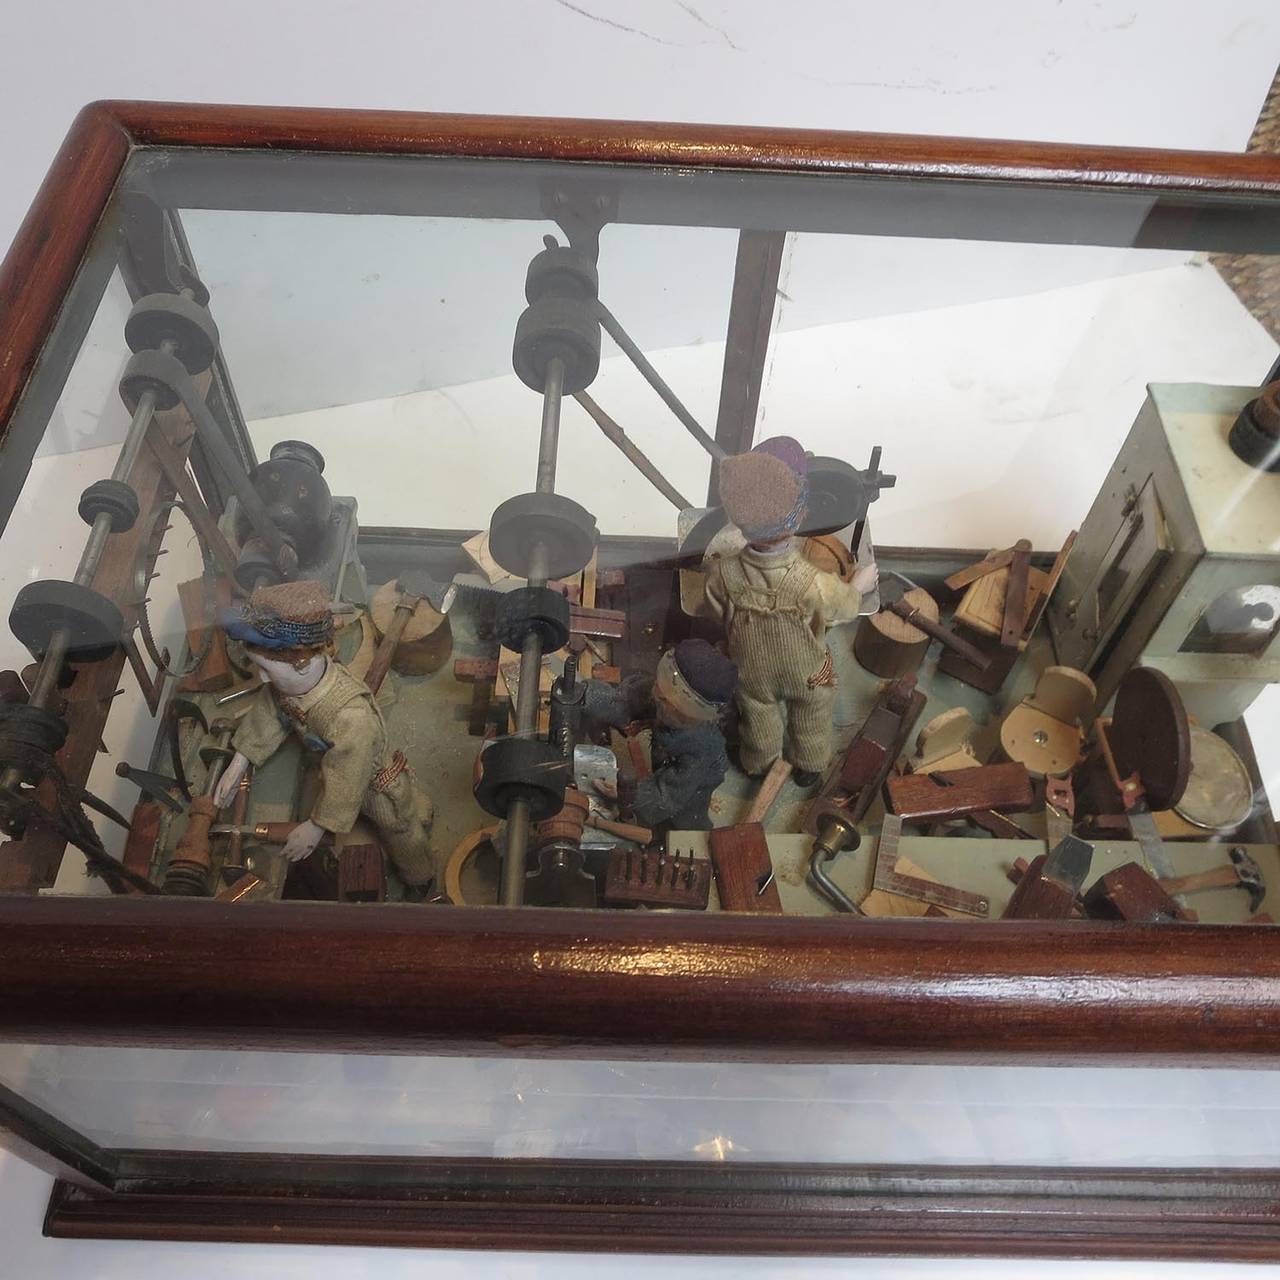 Folsom Prison Inmate Folk Art Wood Shop Diorama 2